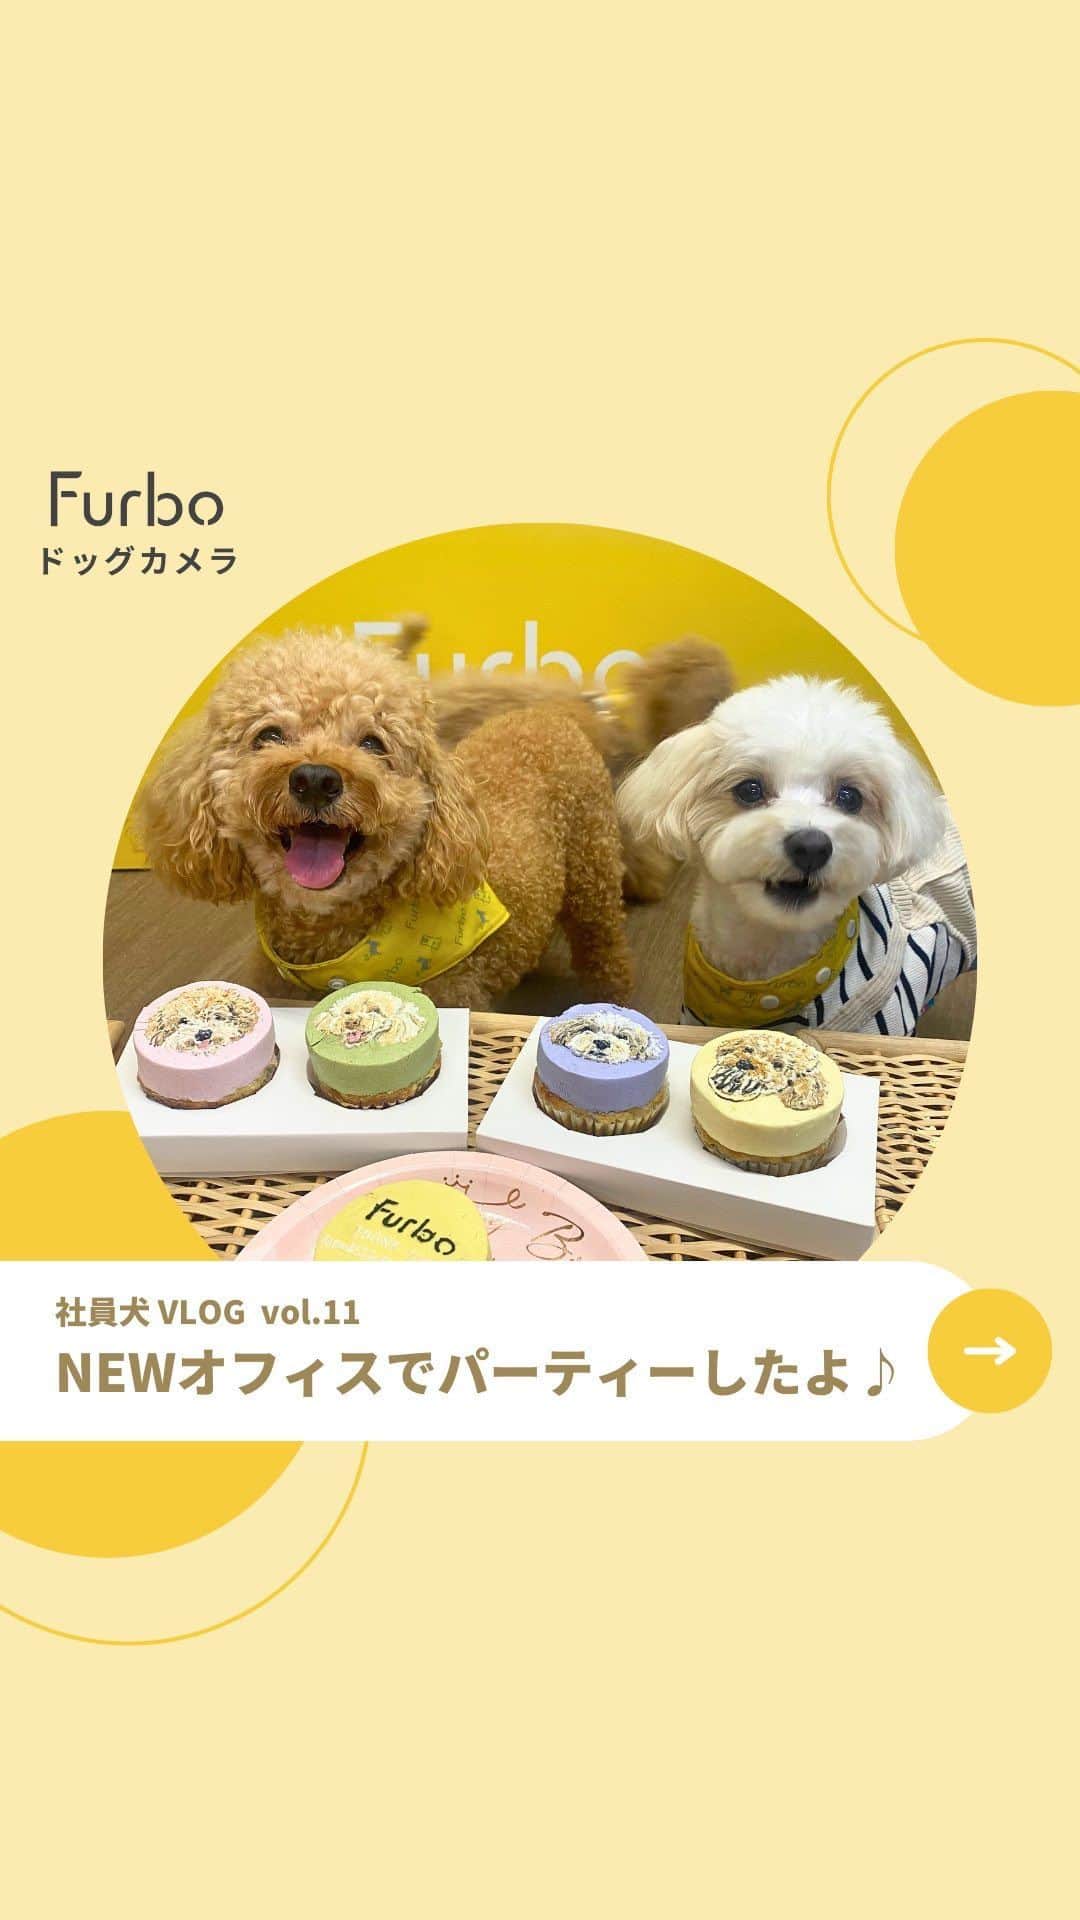 Furbo ドッグカメラのインスタグラム：「@furbo_japan  オフィスの引っ越しに伴って、Furbo社員犬感謝パーティーを開きました🎉  👇似顔絵ケーキはこちらのショップに ご用意いただきました♪✨  わんこのケーキ屋さん🐶🎂🤍 𝐃𝐨𝐠 𝐄𝐚𝐭 @etown_dogeat   ぷぷ、エバー、ロイ、チュウィ、 それぞれのかわいいお顔がついたケーキに Furboチームメンバーも感動しました💓   ⋯    Furboドッグカメラ360°ビューを販売する ペットフレンドリー企業のTomofun株式会社は、  社員犬たち🐶がより広々と快適に過ごせるよう、 ペットスペース完備の素敵なシェアオフィスに 引っ越しました！☺️✨  日本の愛犬家のみなさまに より良いサービスがお届けできるよう 一層の努力を重ねていきます💪🔥  今後ともどうぞよろしくお願いします🐕💛✨     ⋯     Furboはペット特化型の見守りカメラ✨  詳しくはプロフィールリンク🔗の ˗ˏˋ 愛犬専用の設計 ˎˊ˗ へ！🐕  ⇨ @furbo_japan      ⋯     #Furbo #ファーボ #犬すたぐらむ #わんすたぐらむ #犬好きさんと繋がりたい #わんこのいる生活 #かわいい犬 #わんこ部 #オフィス犬 #社員犬 #看板犬 #ふわもこ部 #ふわもこ部ワンコ #ふわふわ犬 #もふもふ犬」